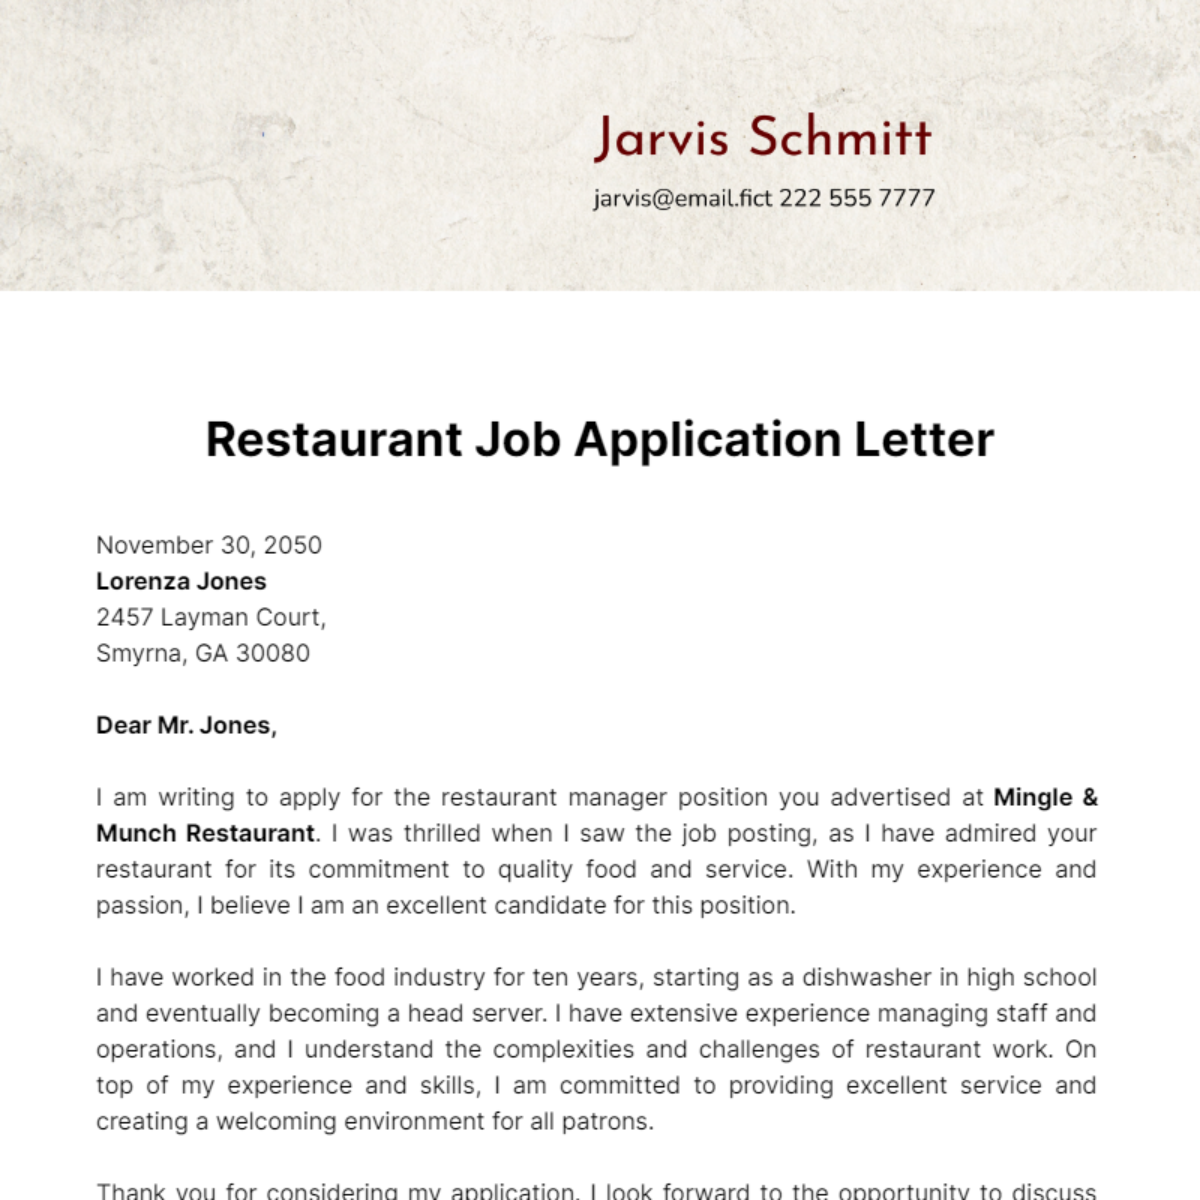 Restaurant Job Application Letter Template